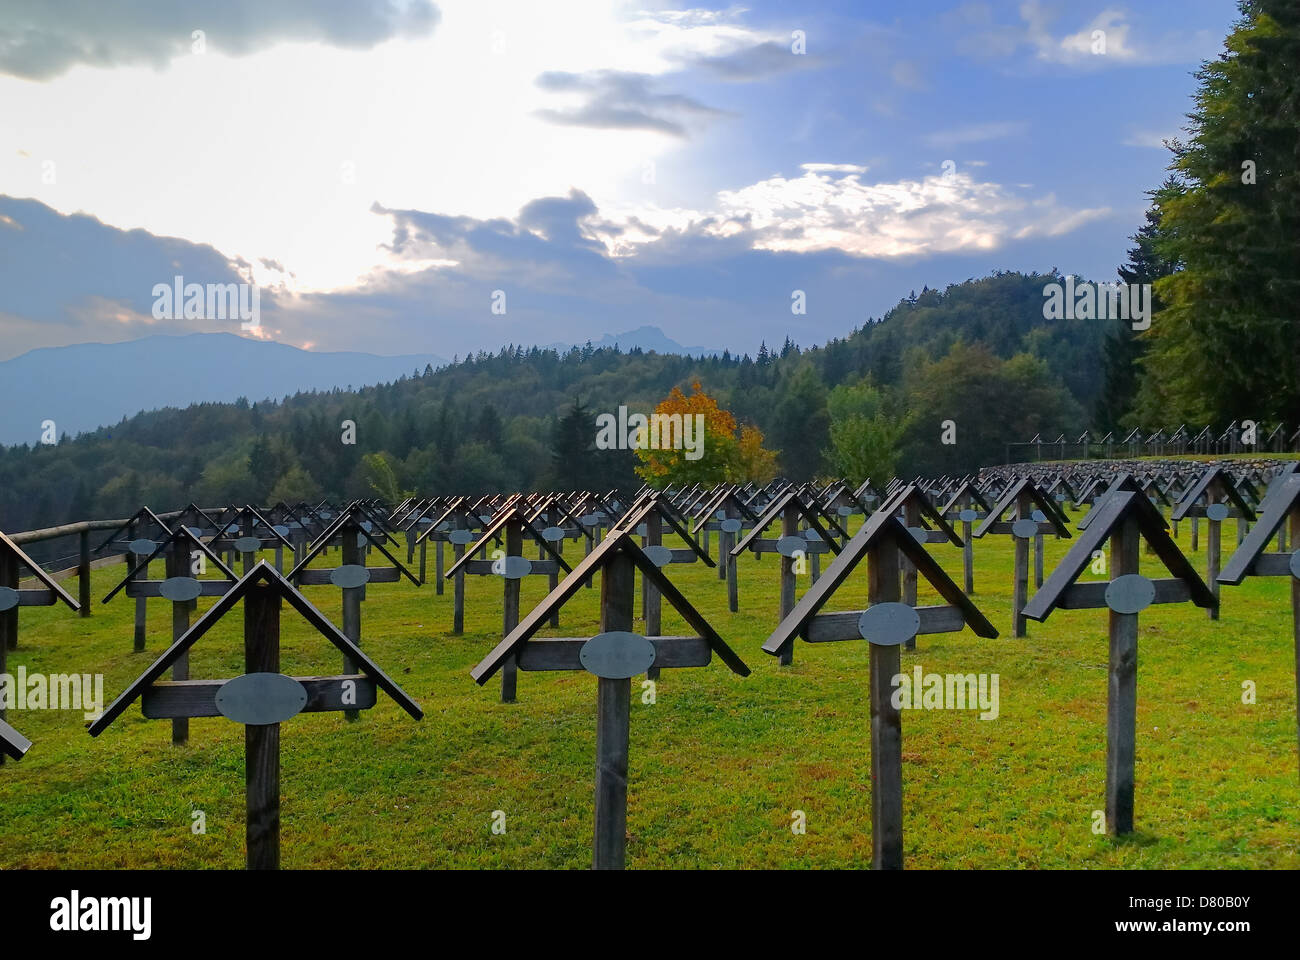 La PREMIÈRE GUERRE MONDIALE. Trentin-haut-Adige, Italie : Slaghenaufi Cimetière de guerre autrichien.Le cimetière à proximité du lac Lavarone. Banque D'Images